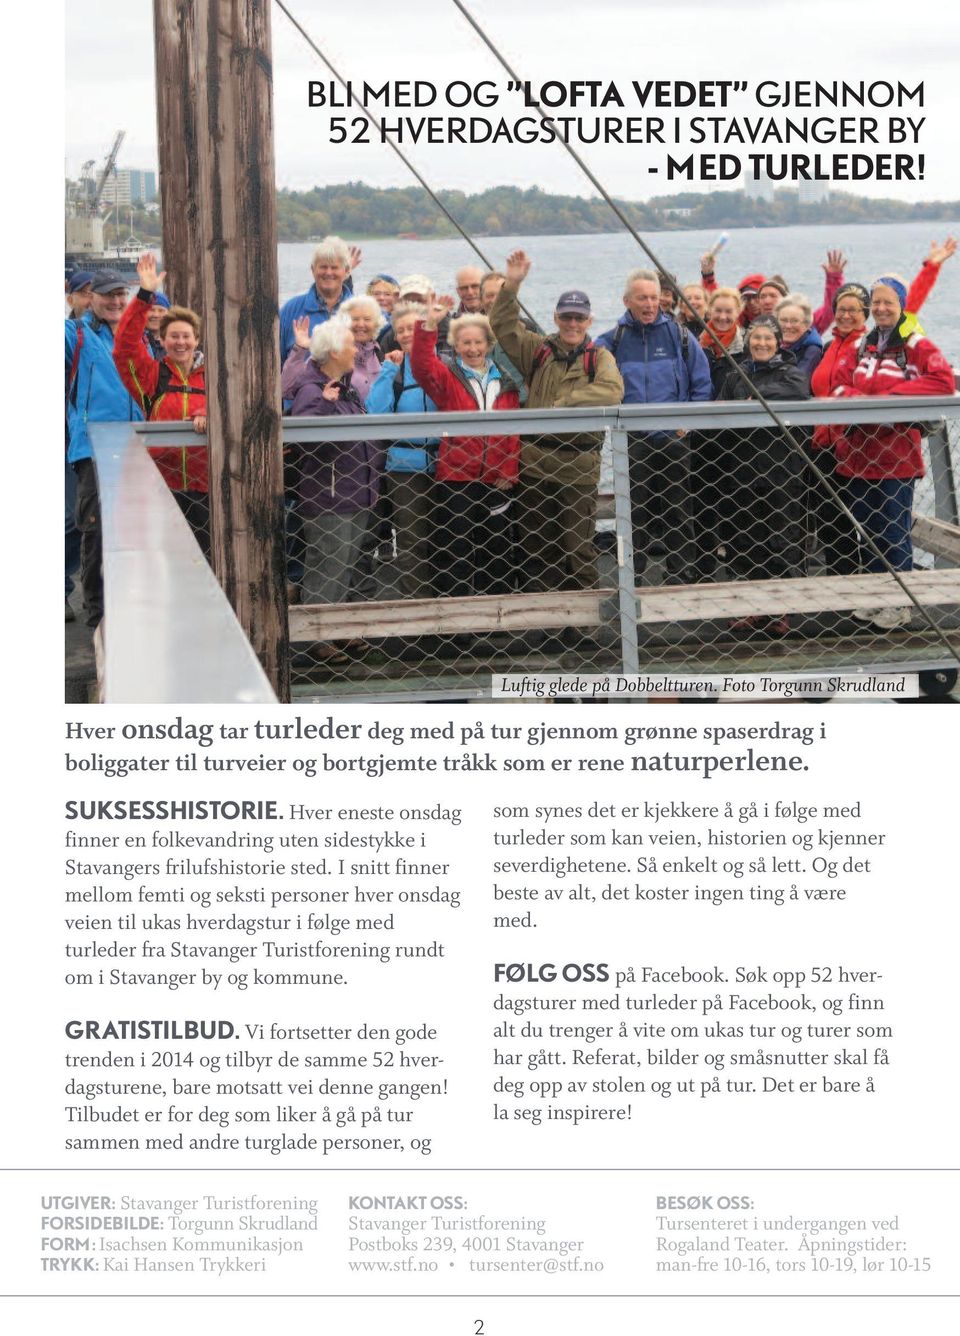 Hver eneste onsdag finner en folkevandring uten sidestykke i Stavangers frilufshistorie sted.